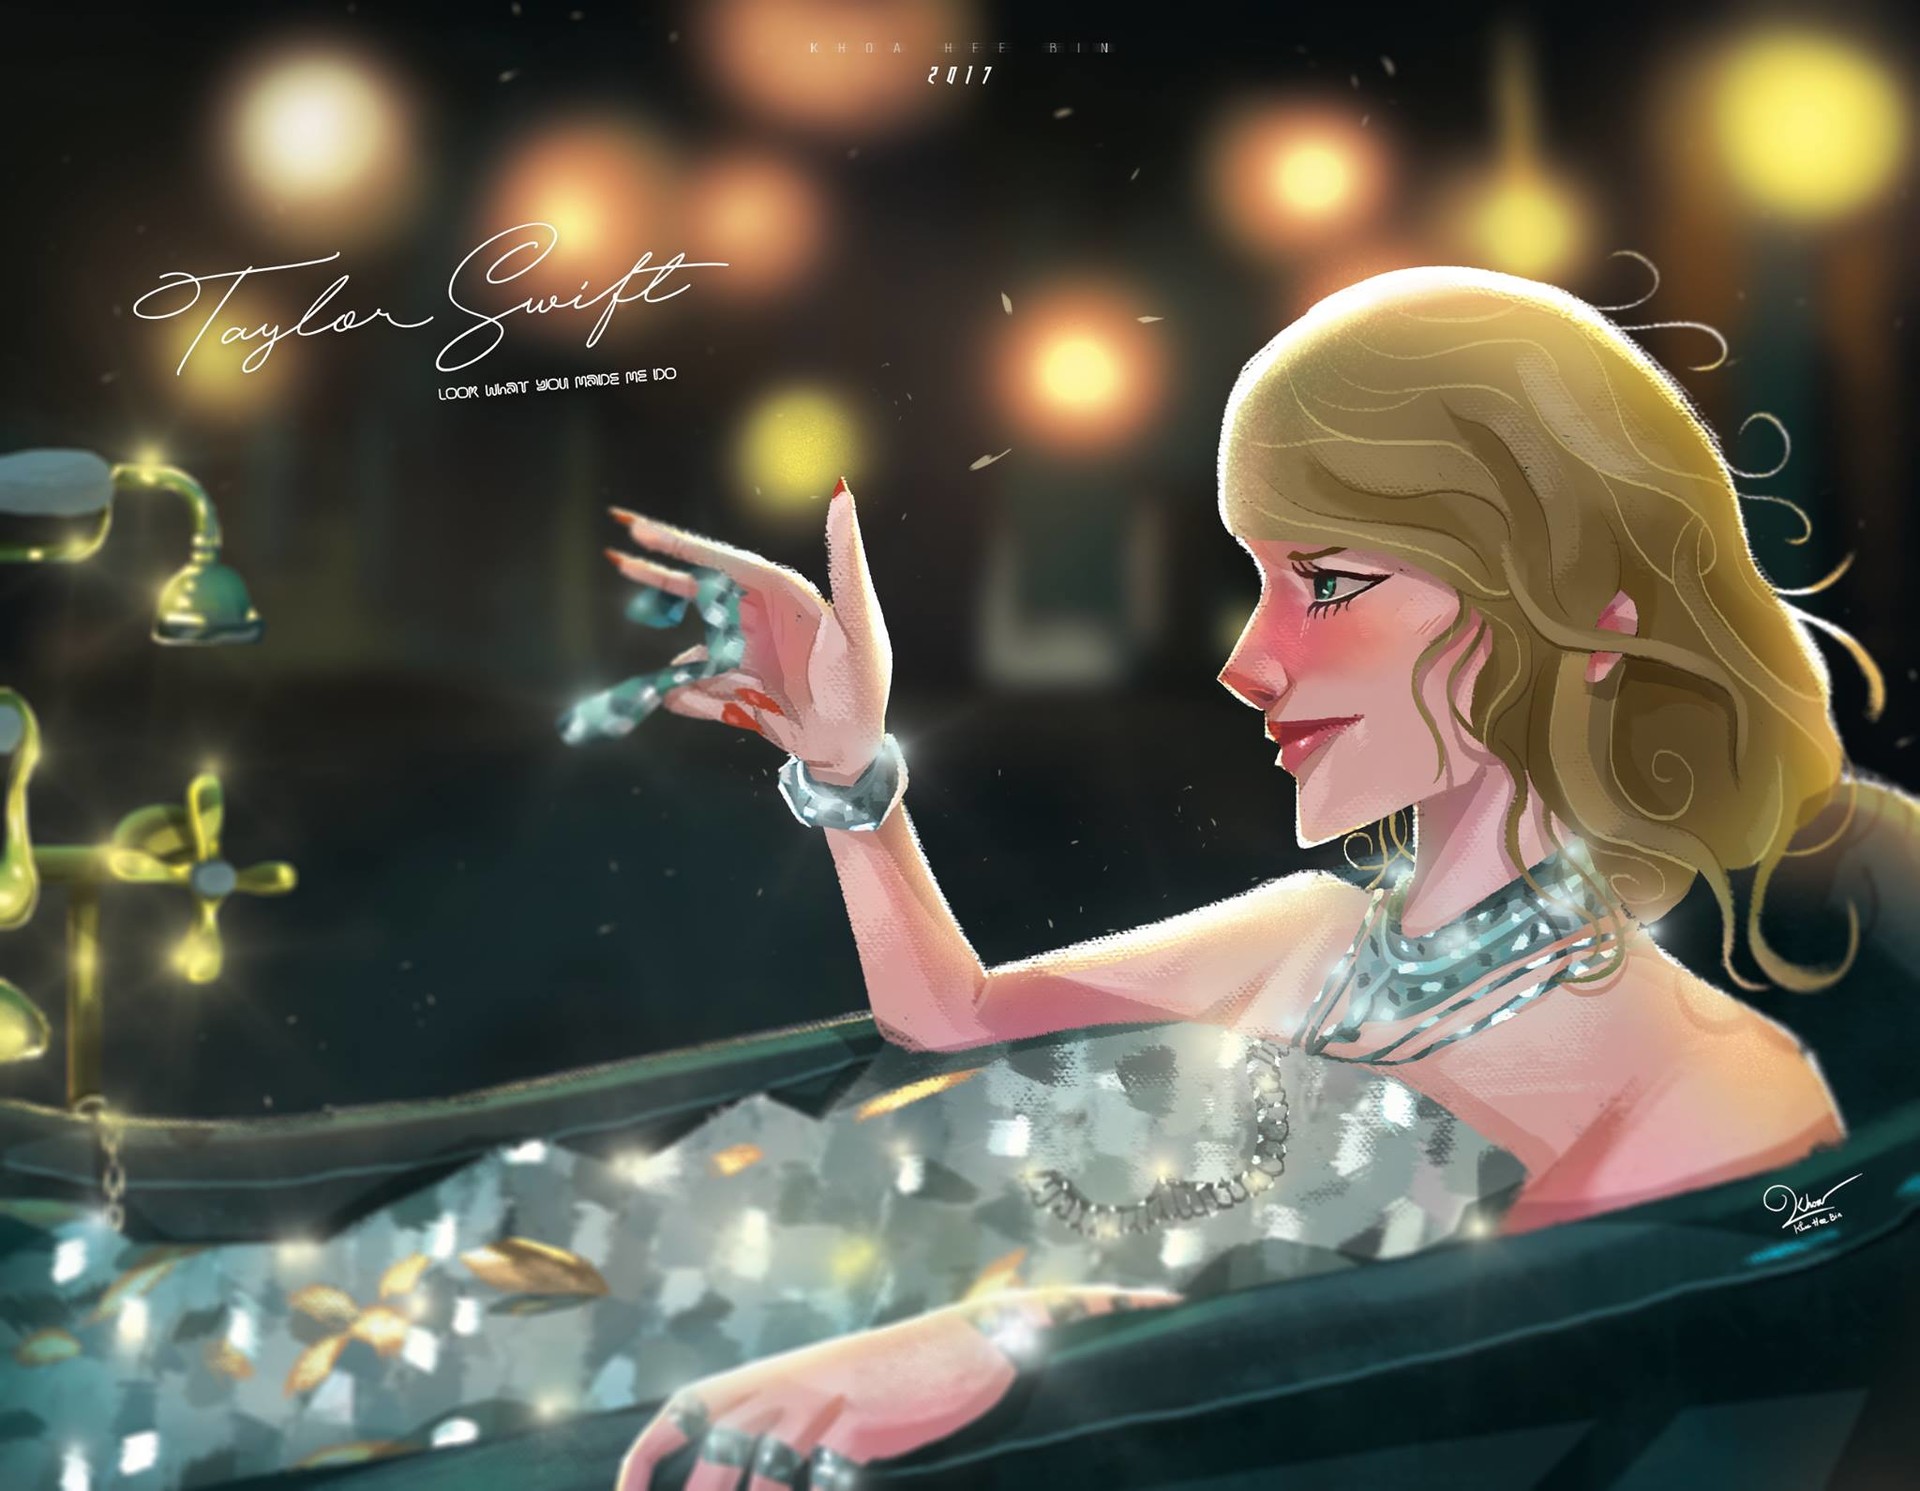 Nguyễn Khoa - Taylor Swift Fan Art - Cartoon Style By Me